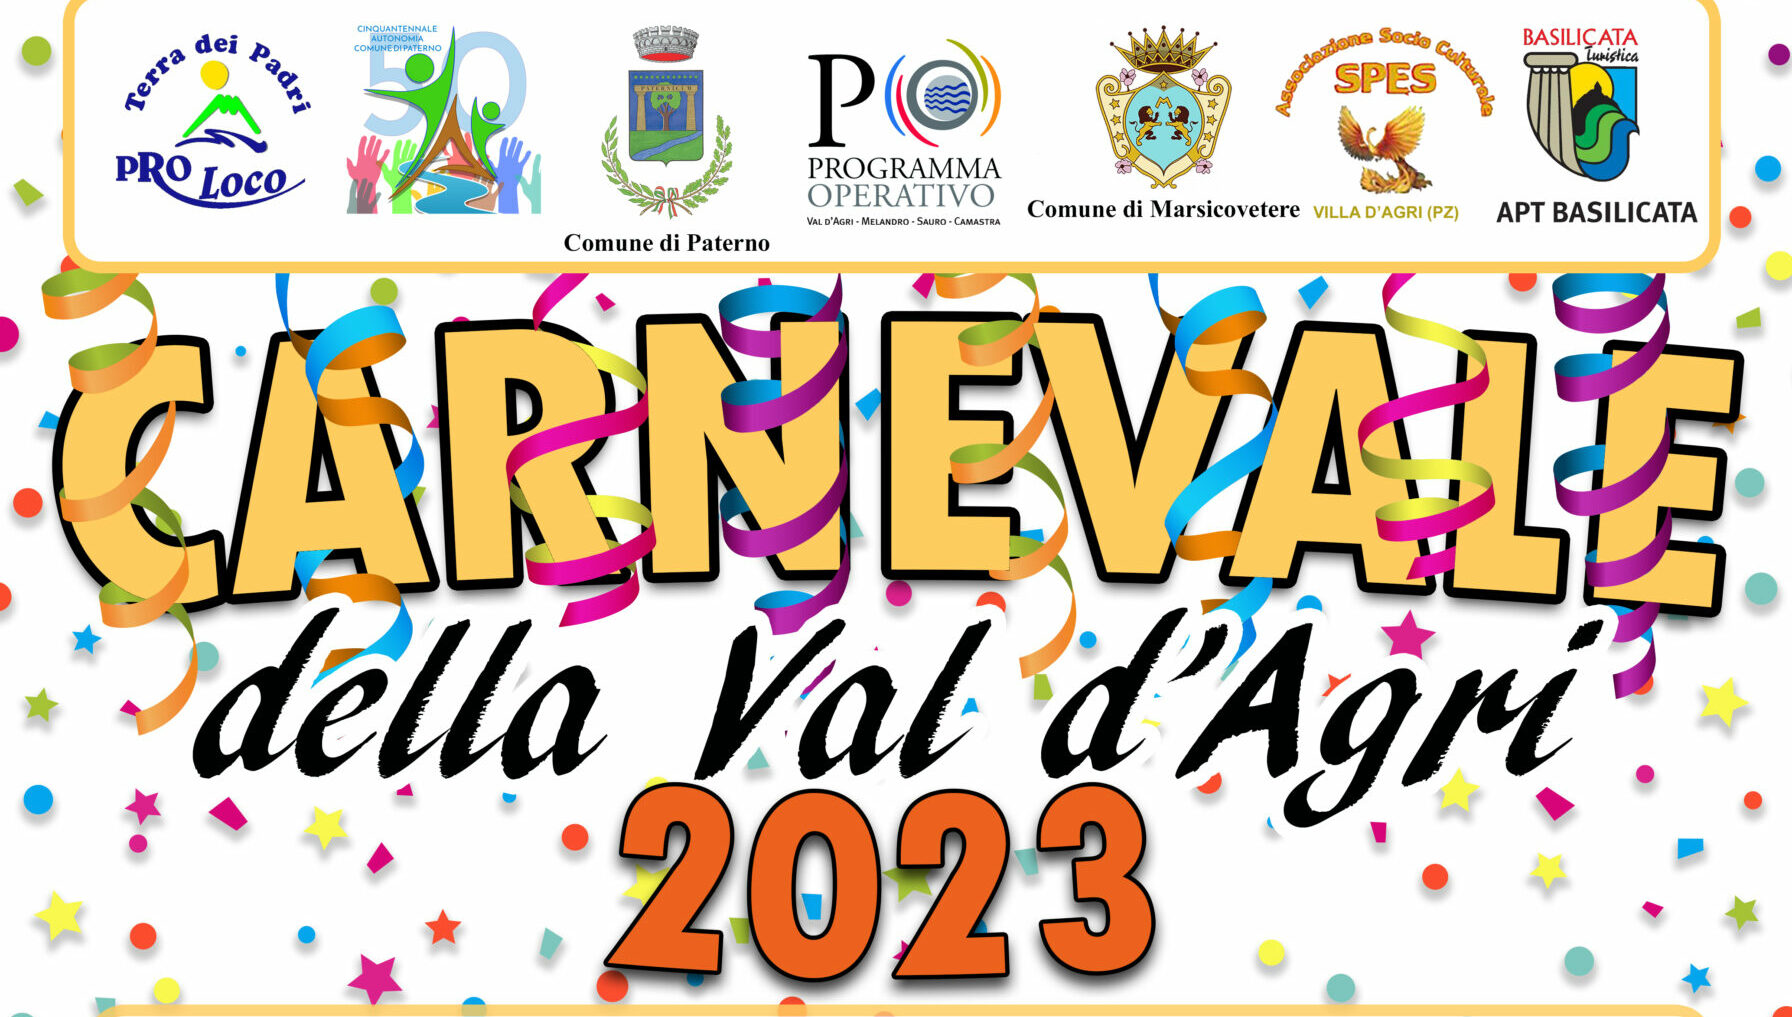 Il Carnevale della Val d’Agri: appuntamento il 19 a Paterno e il 21 a Villa d’Agri di Marsicovetere